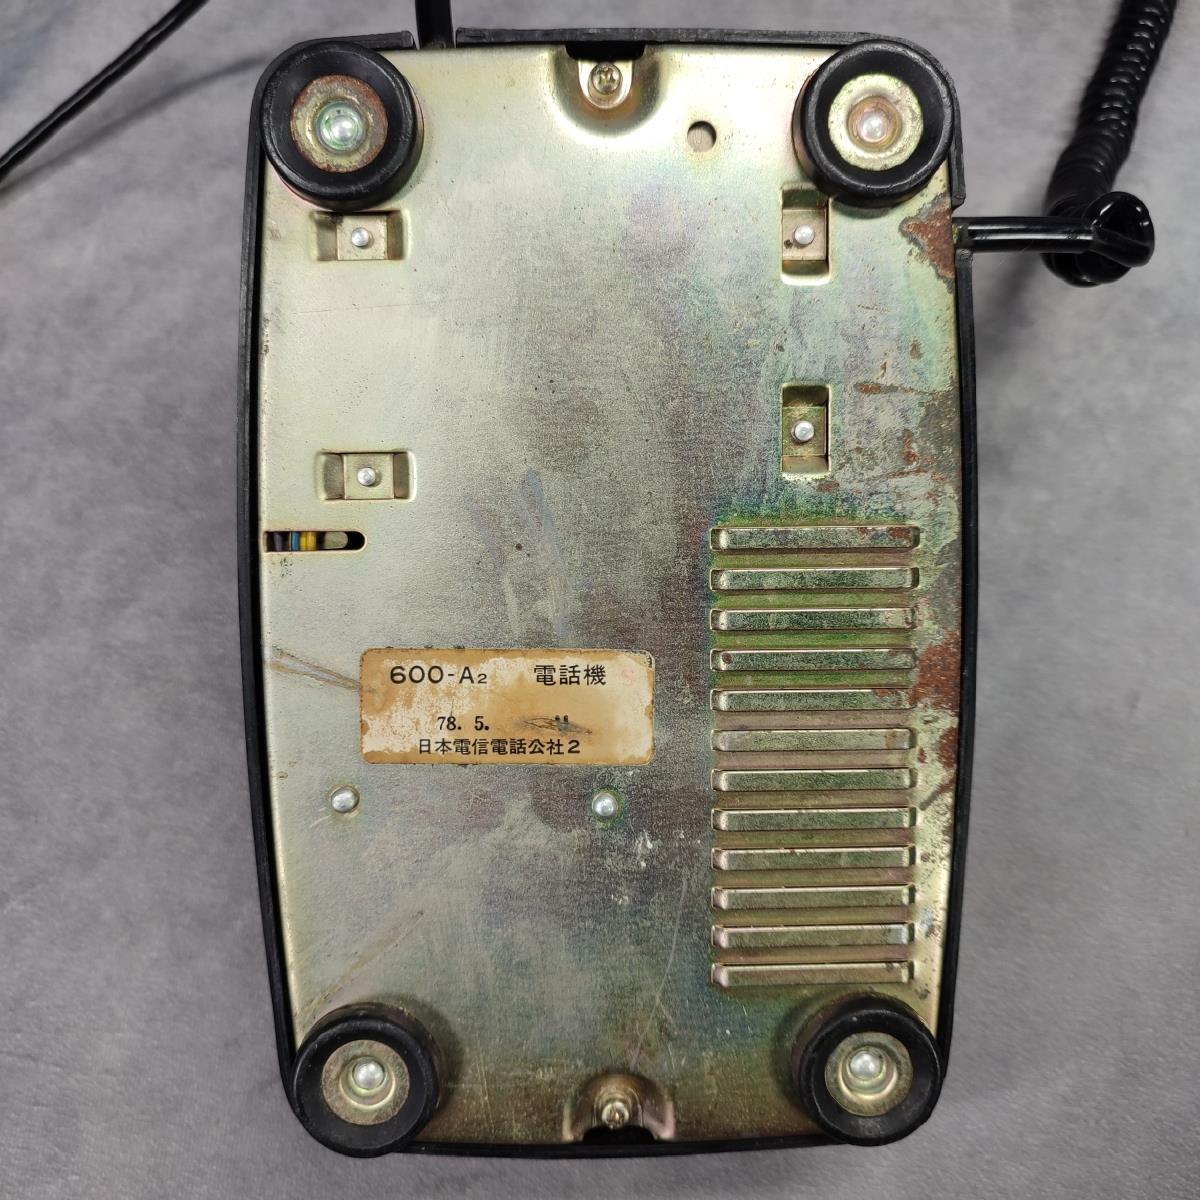 【昭和 レトロ】 黒電話 600-A2 電話機 日本電信電話公社2 ダイヤル式 ヴィンテージ 家電 インテリア オブジェ 中古品 の画像8